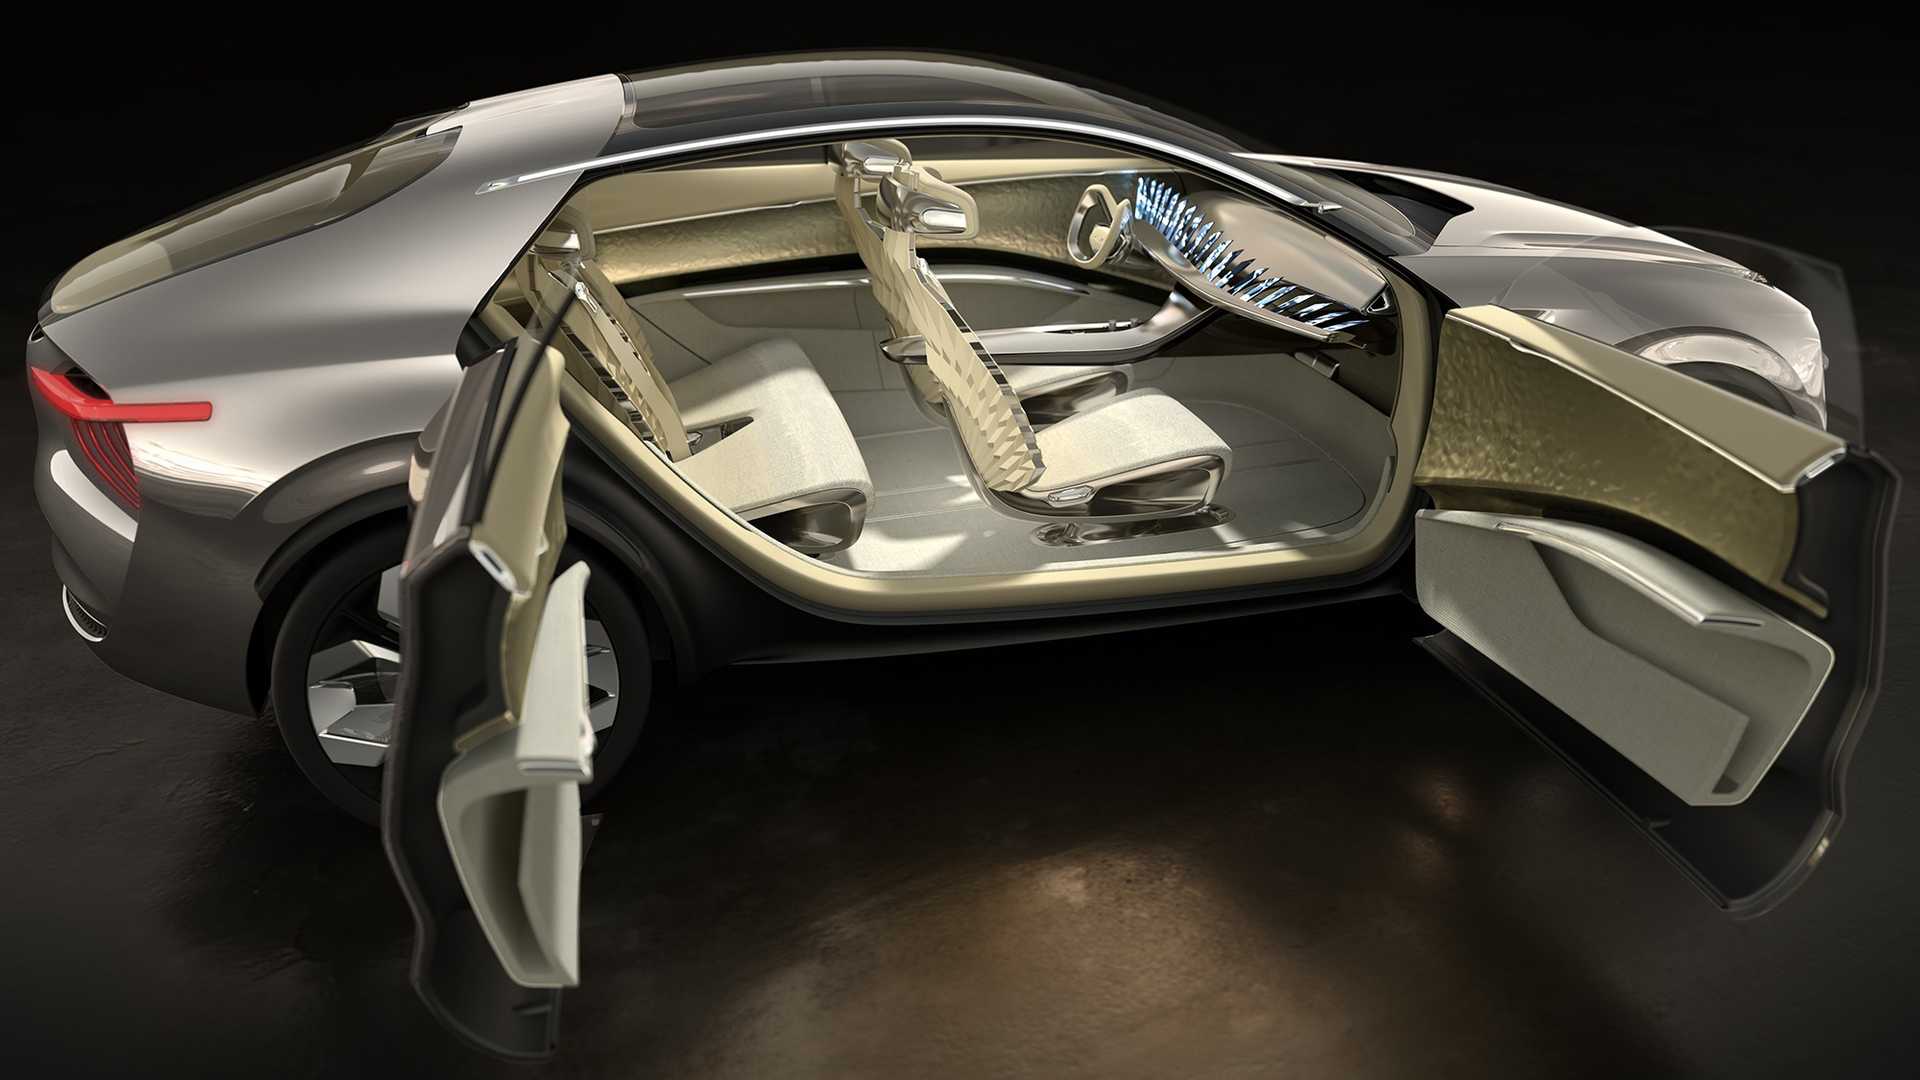 كيا ستطرح نسخة إنتاجية من سيارتها إيماجين بالأسواق 29